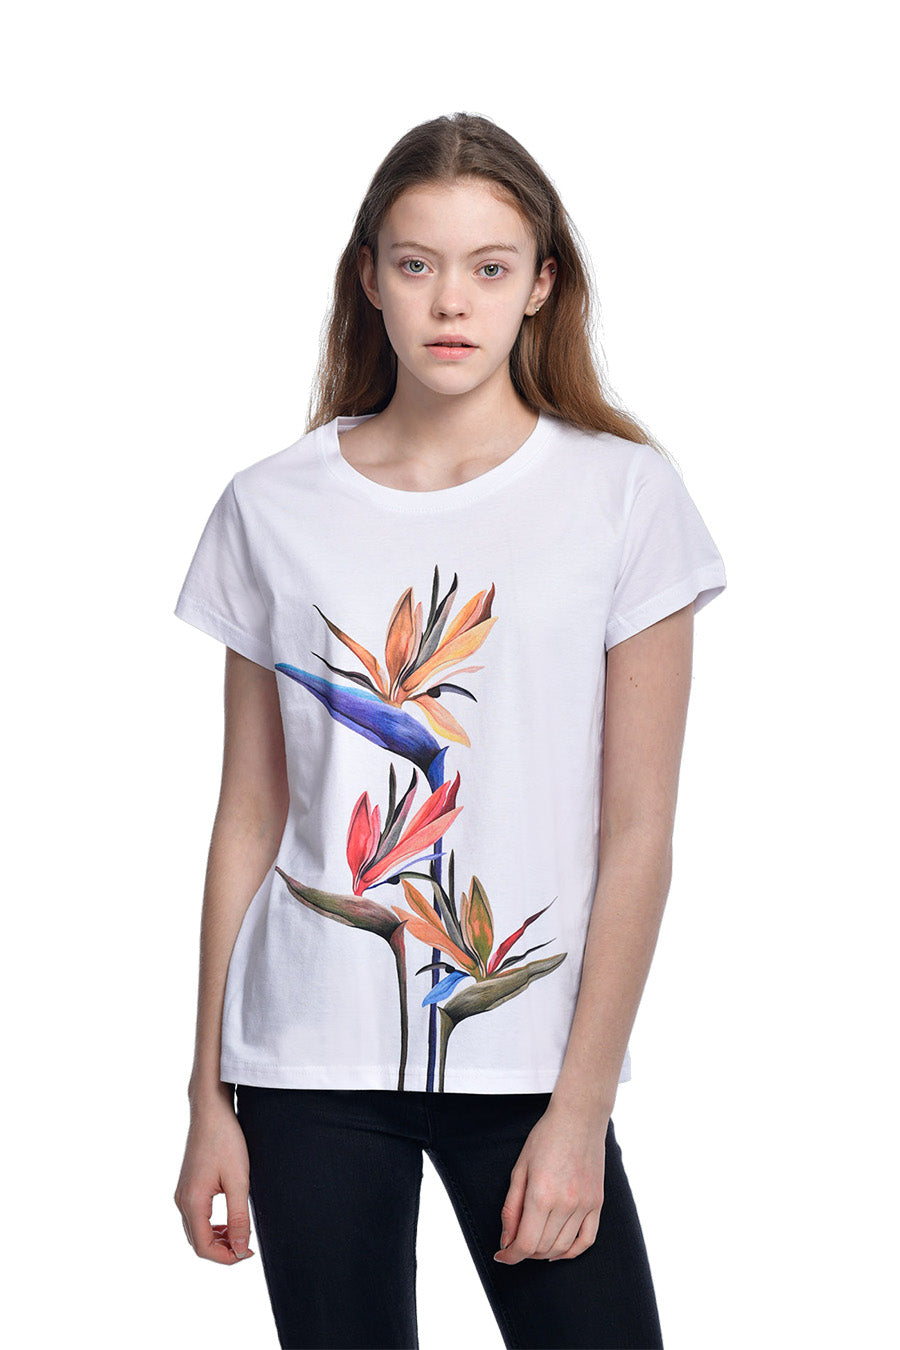 Lilit-Sarkisian-Strelitzia-t-shirt-white